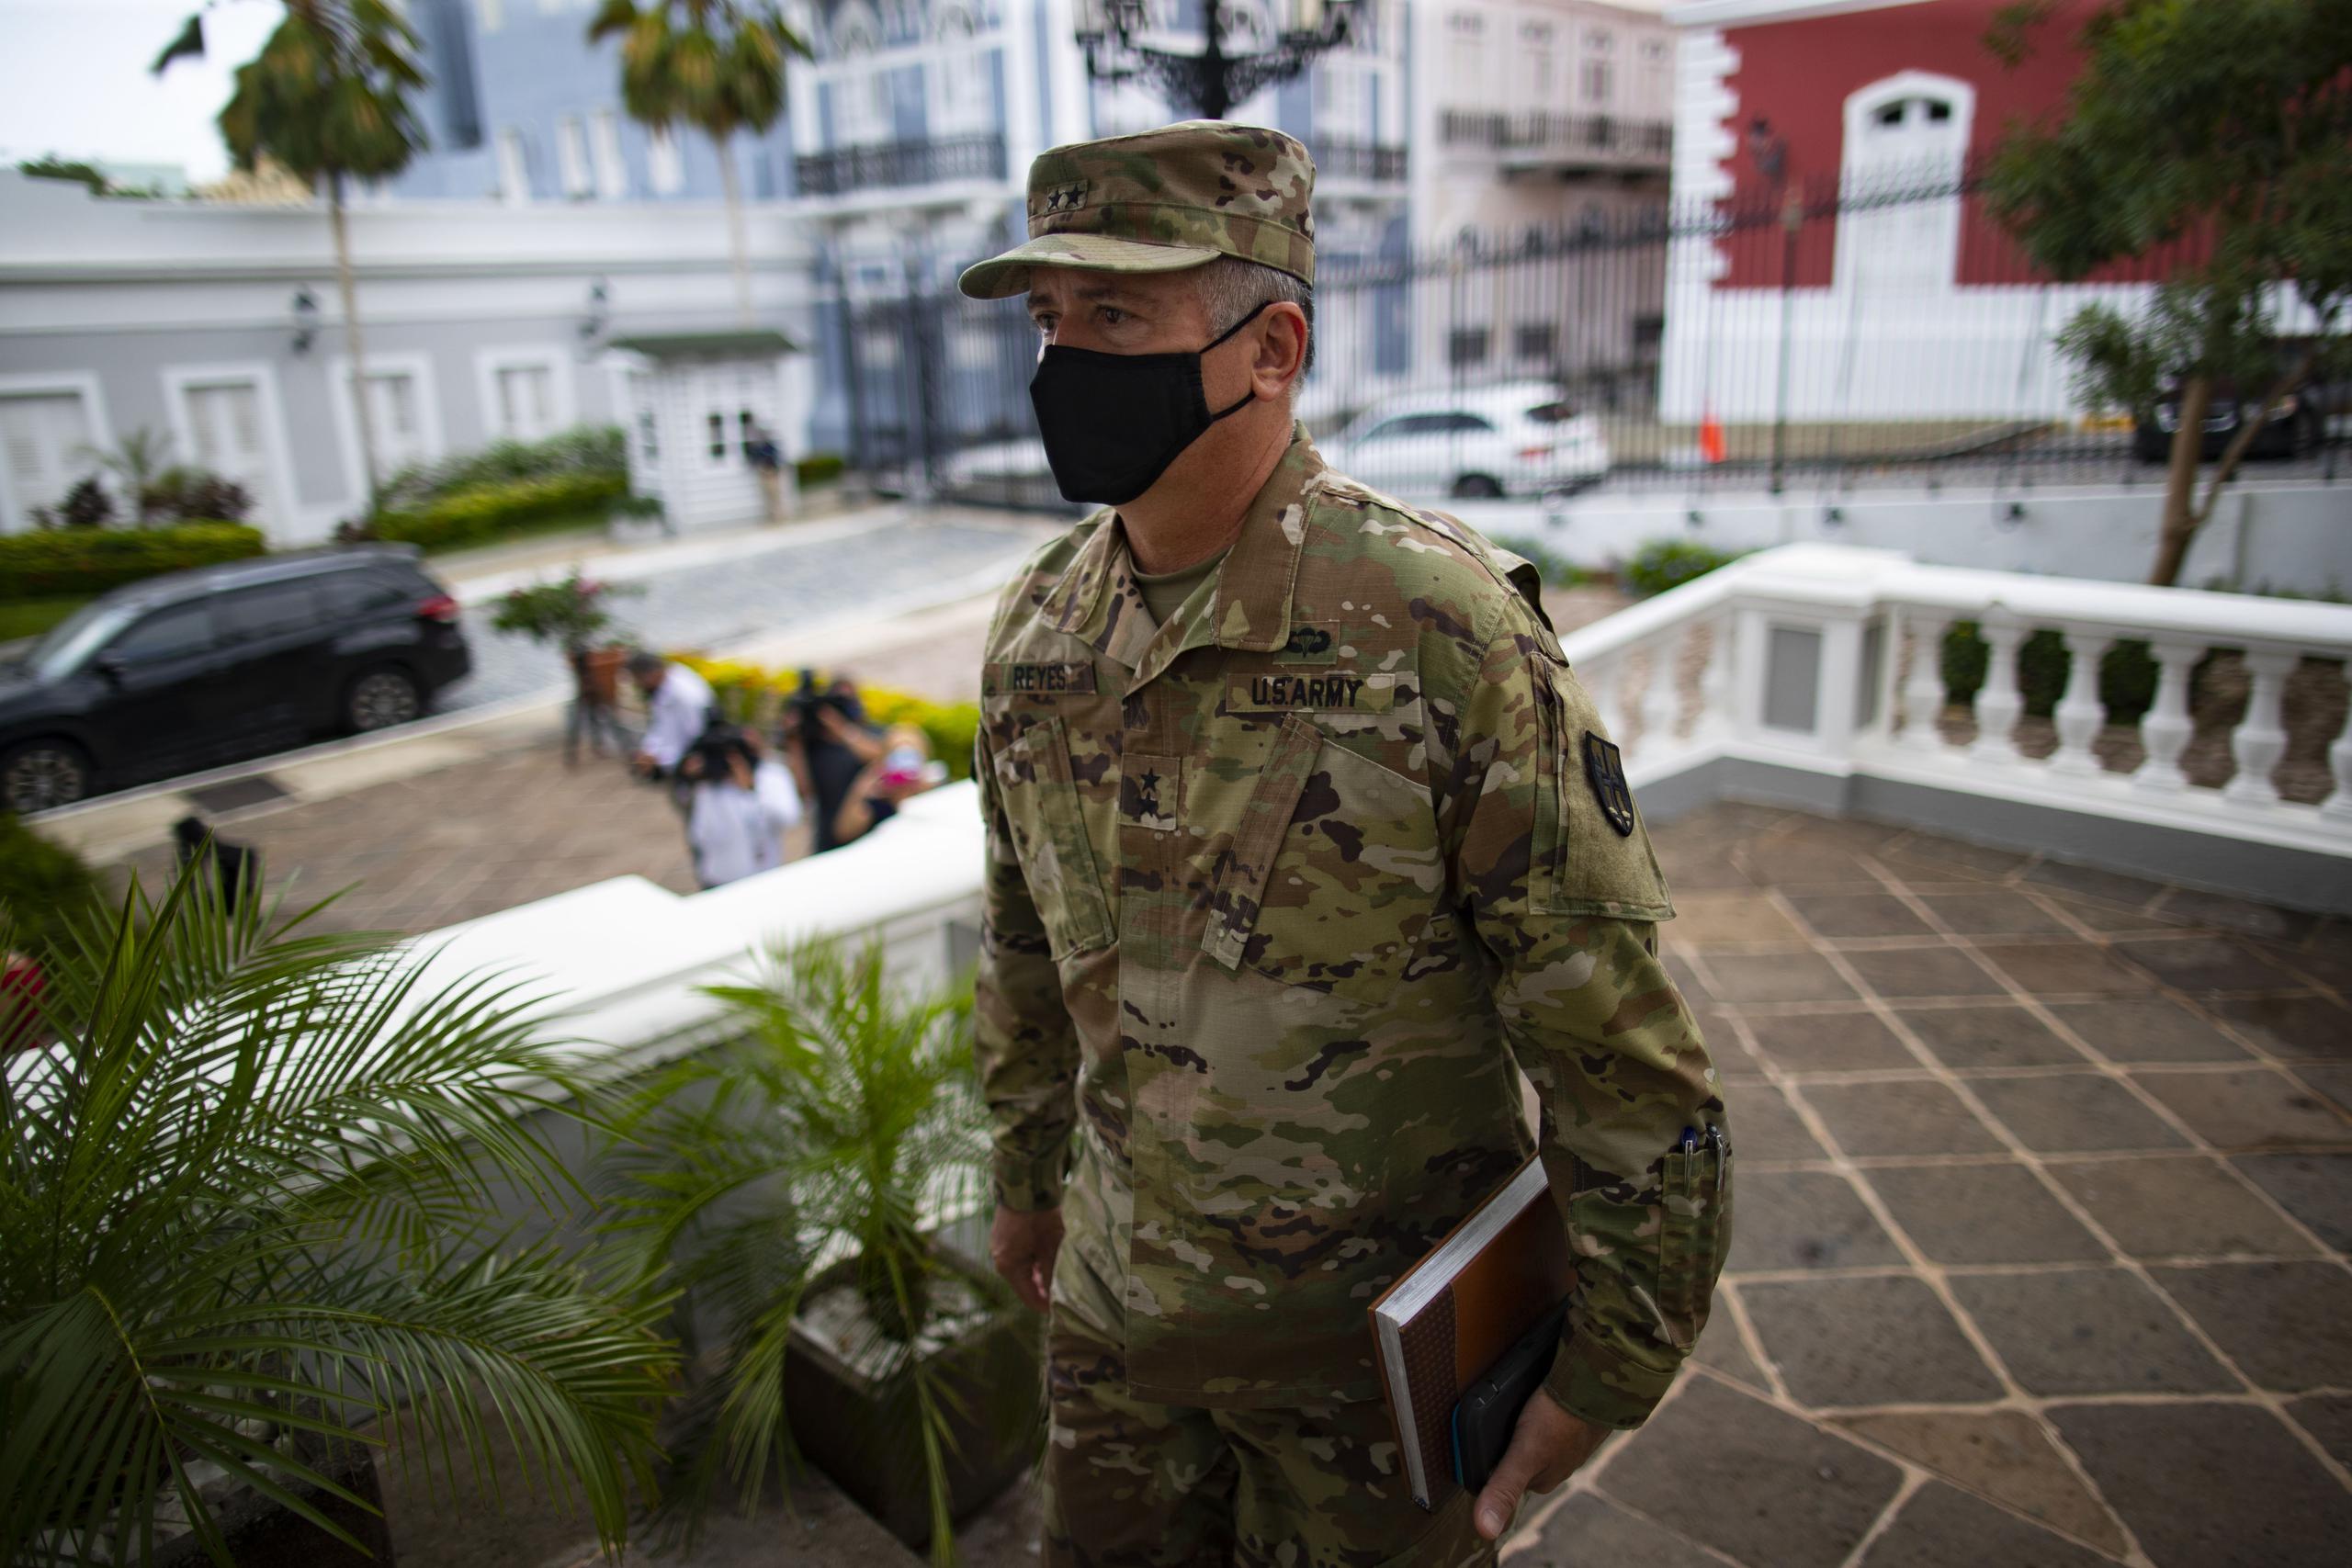 El general José Reyes, de la Guardia Nacional, llega a La Fortaleza para participar de la reunión que convocó la gobernadora Wanda Vázquez Garced con funcionarios de agencias federales y estatales sobre temas relacionados al COVID-19.